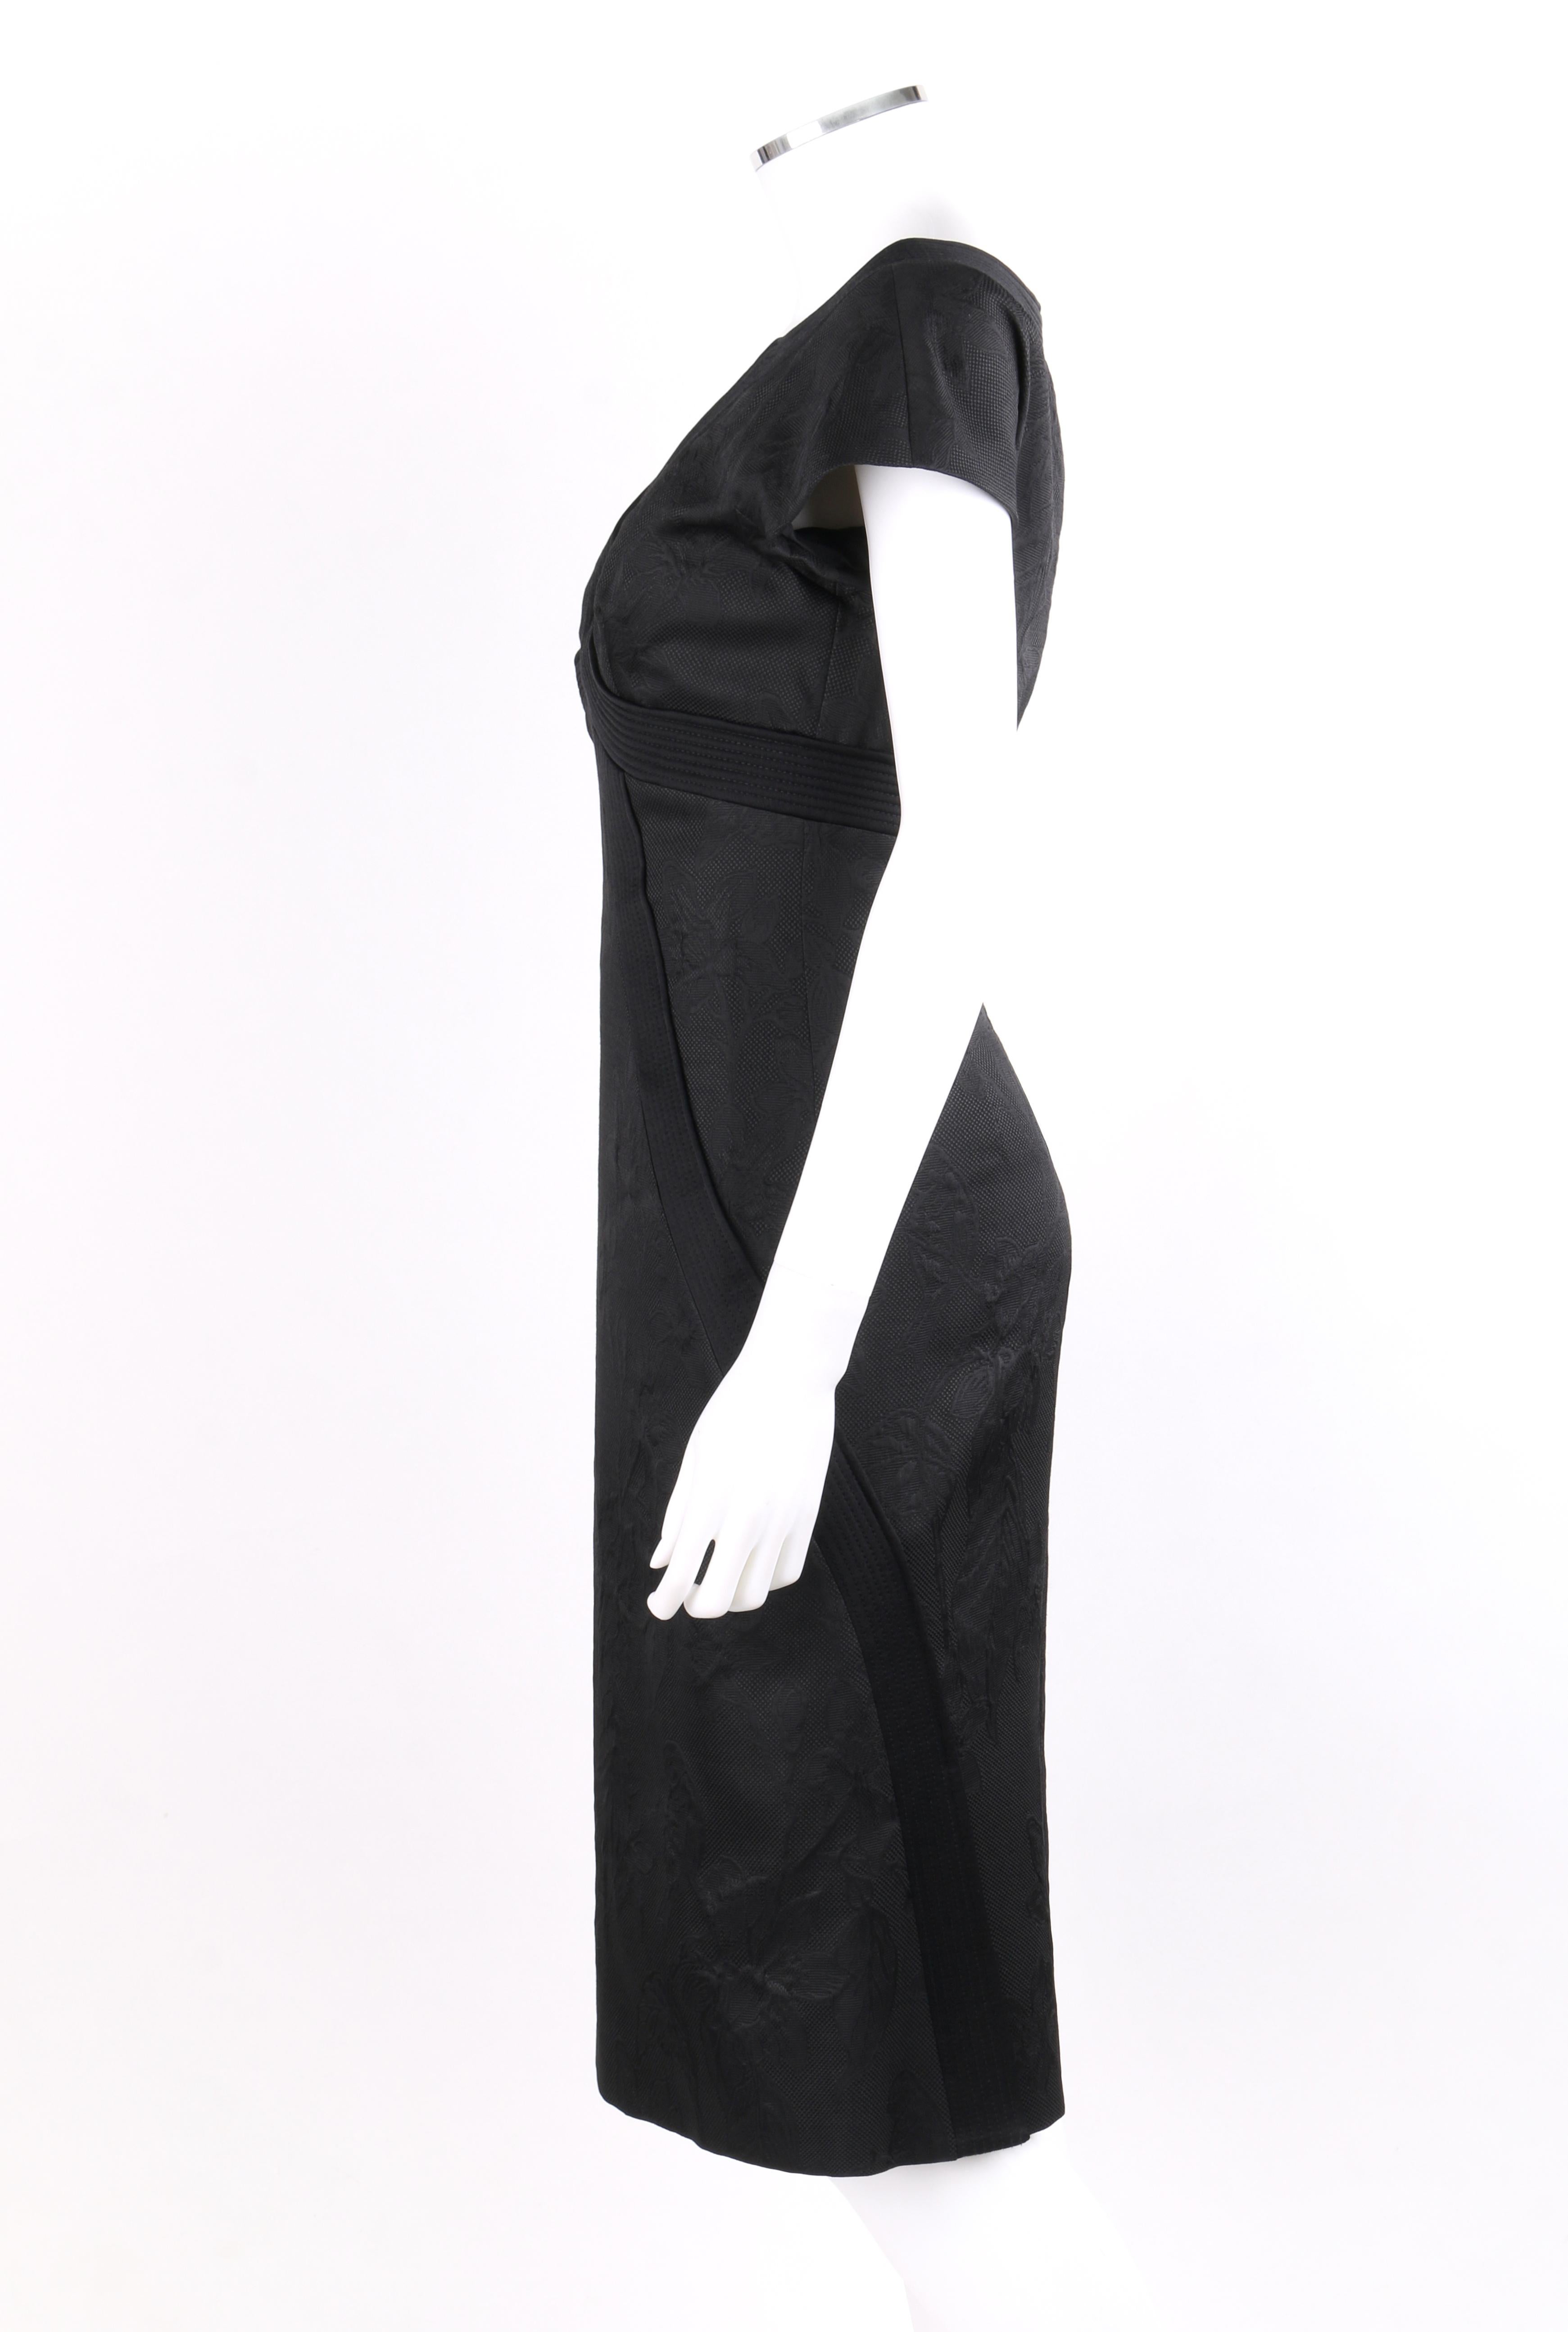 ALEXANDER McQueen A/W 2006 “Windows of Culloden” Black Brocade Birds Silk Dress 1